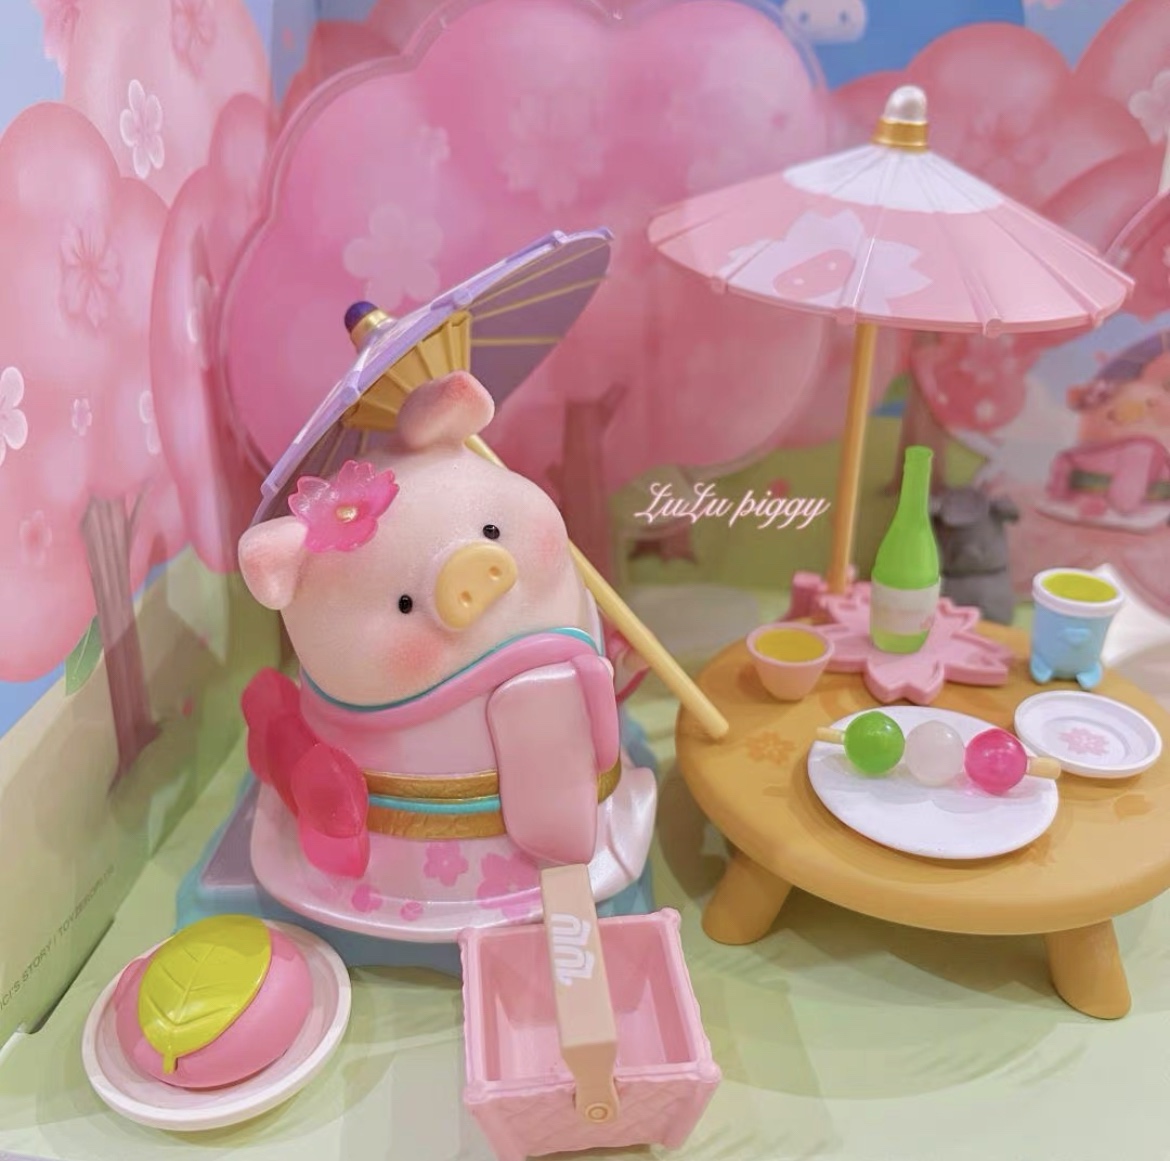 52TOYS罐头猪LuLu花见花开赏樱场景组潮流玩具礼品